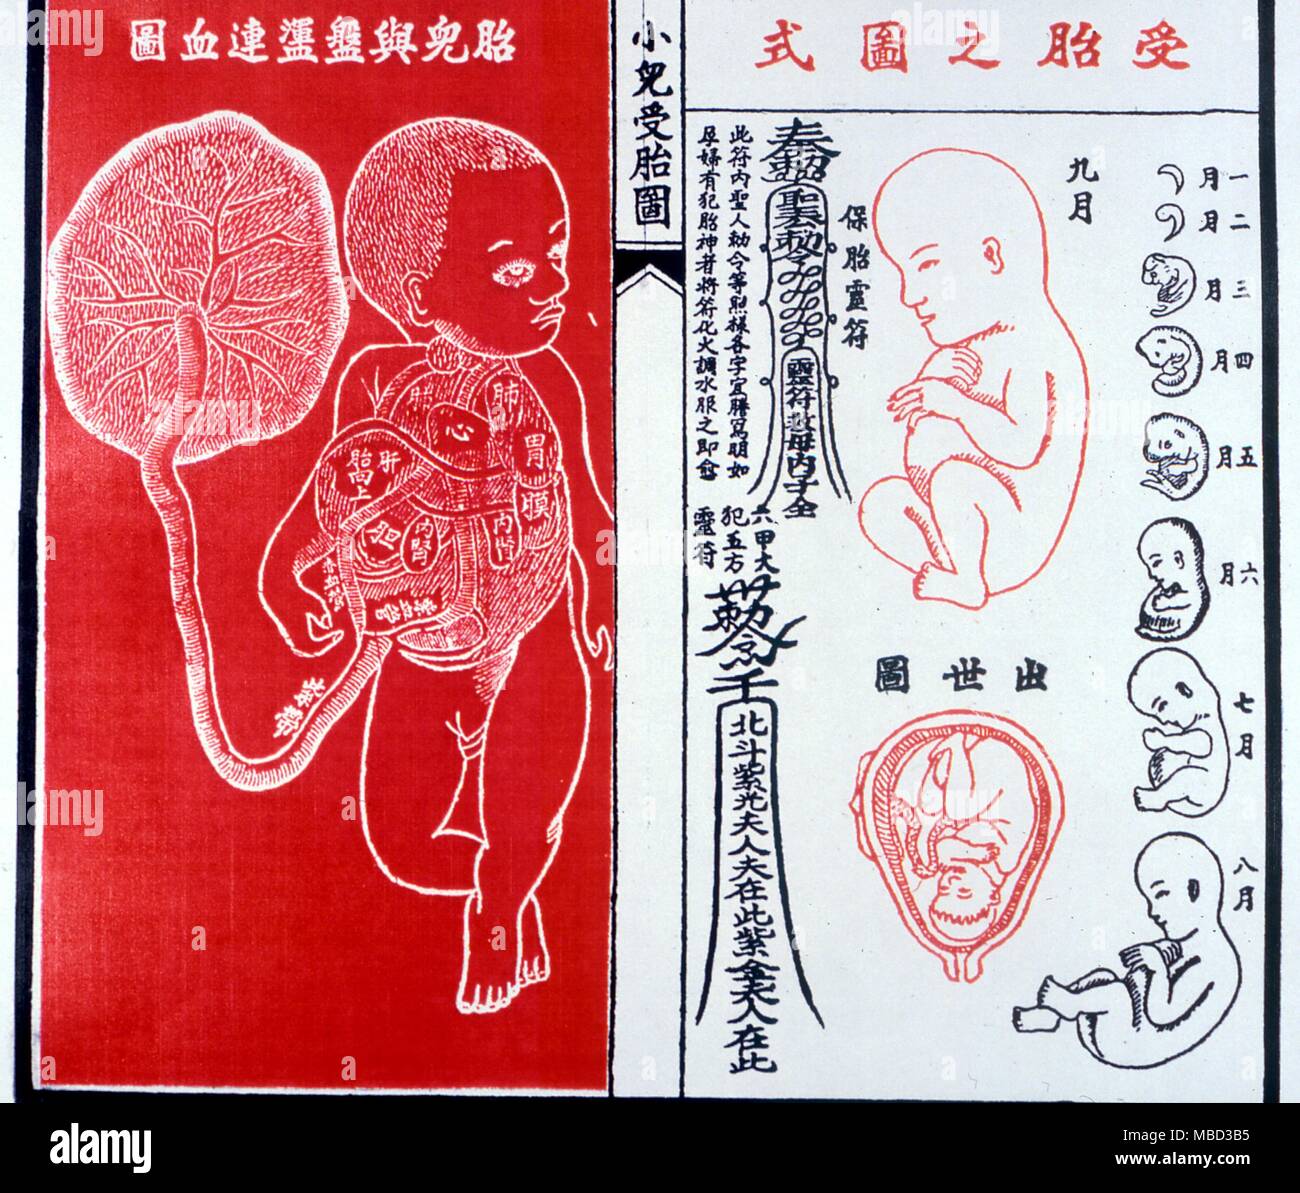 Physionomie. Imprimer chinois montrant les étapes de la croissance embryonnaire dans l'utérus. À partir d'un calendrier annuel chinois manuel. Banque D'Images